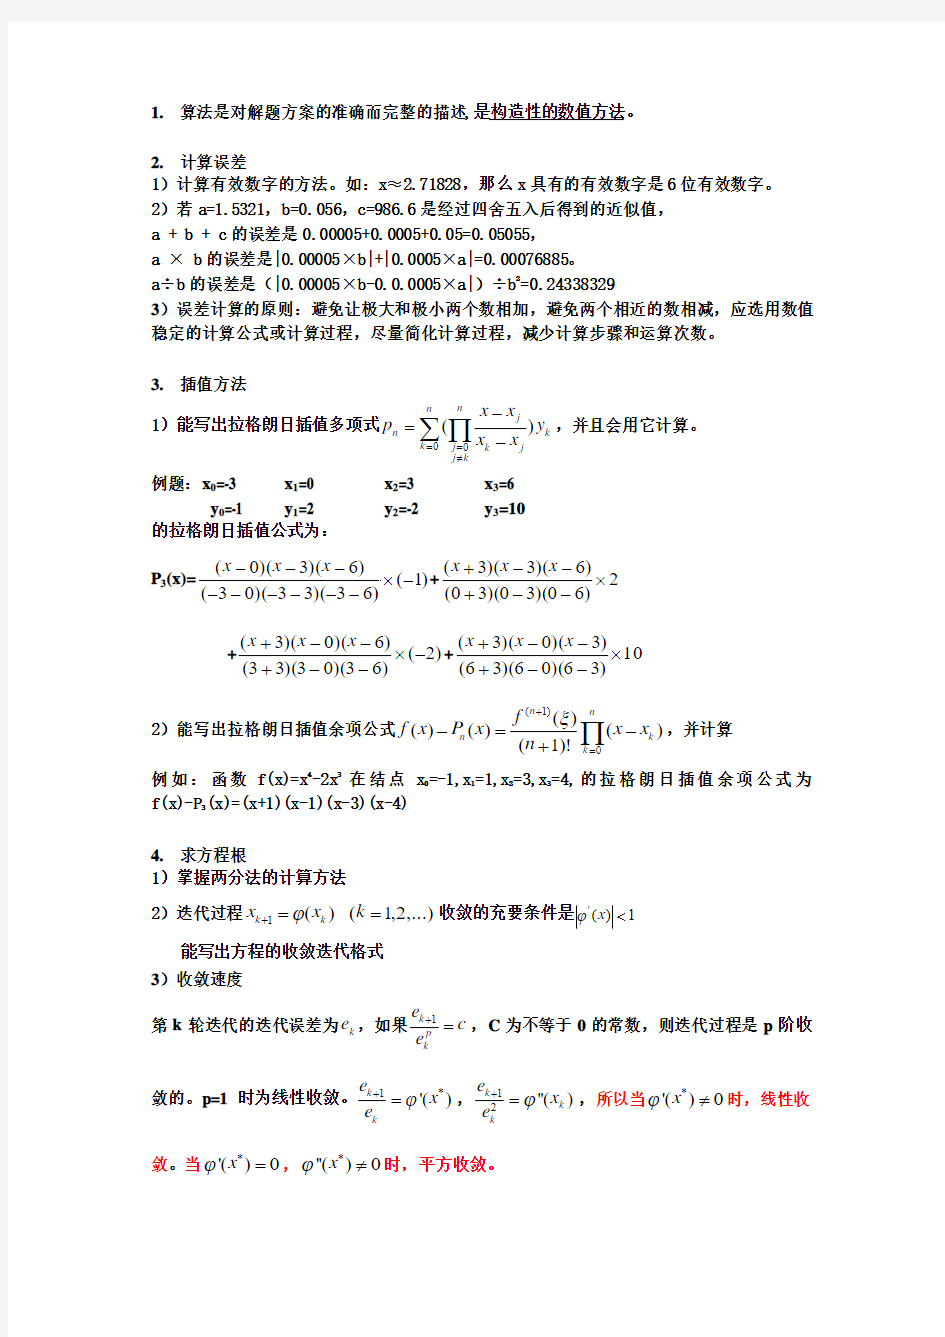 南京工程学院 计算方法复习提纲